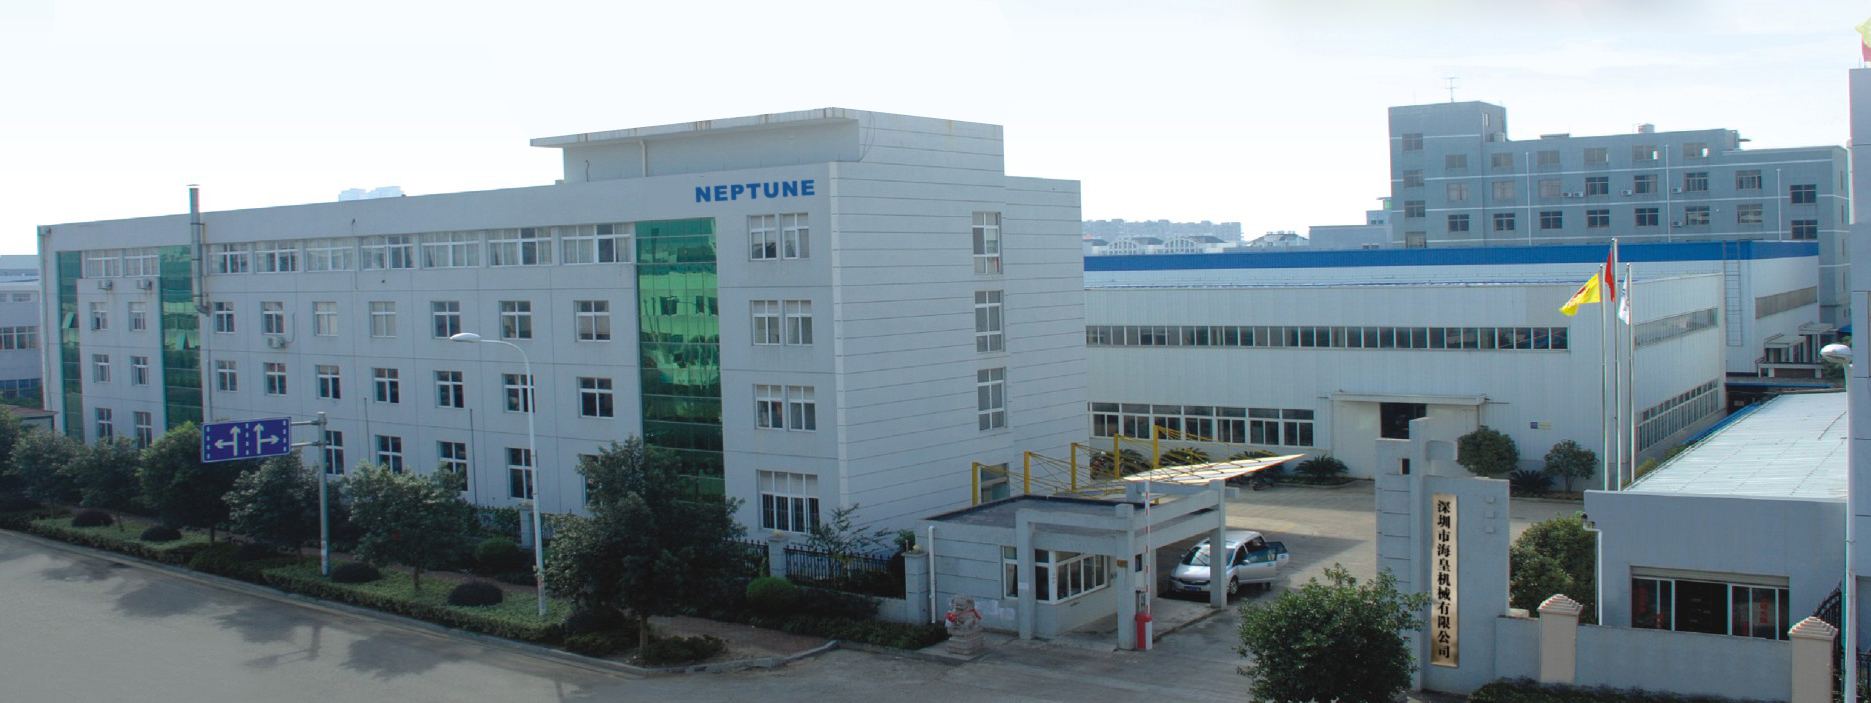 neptune machinery factory